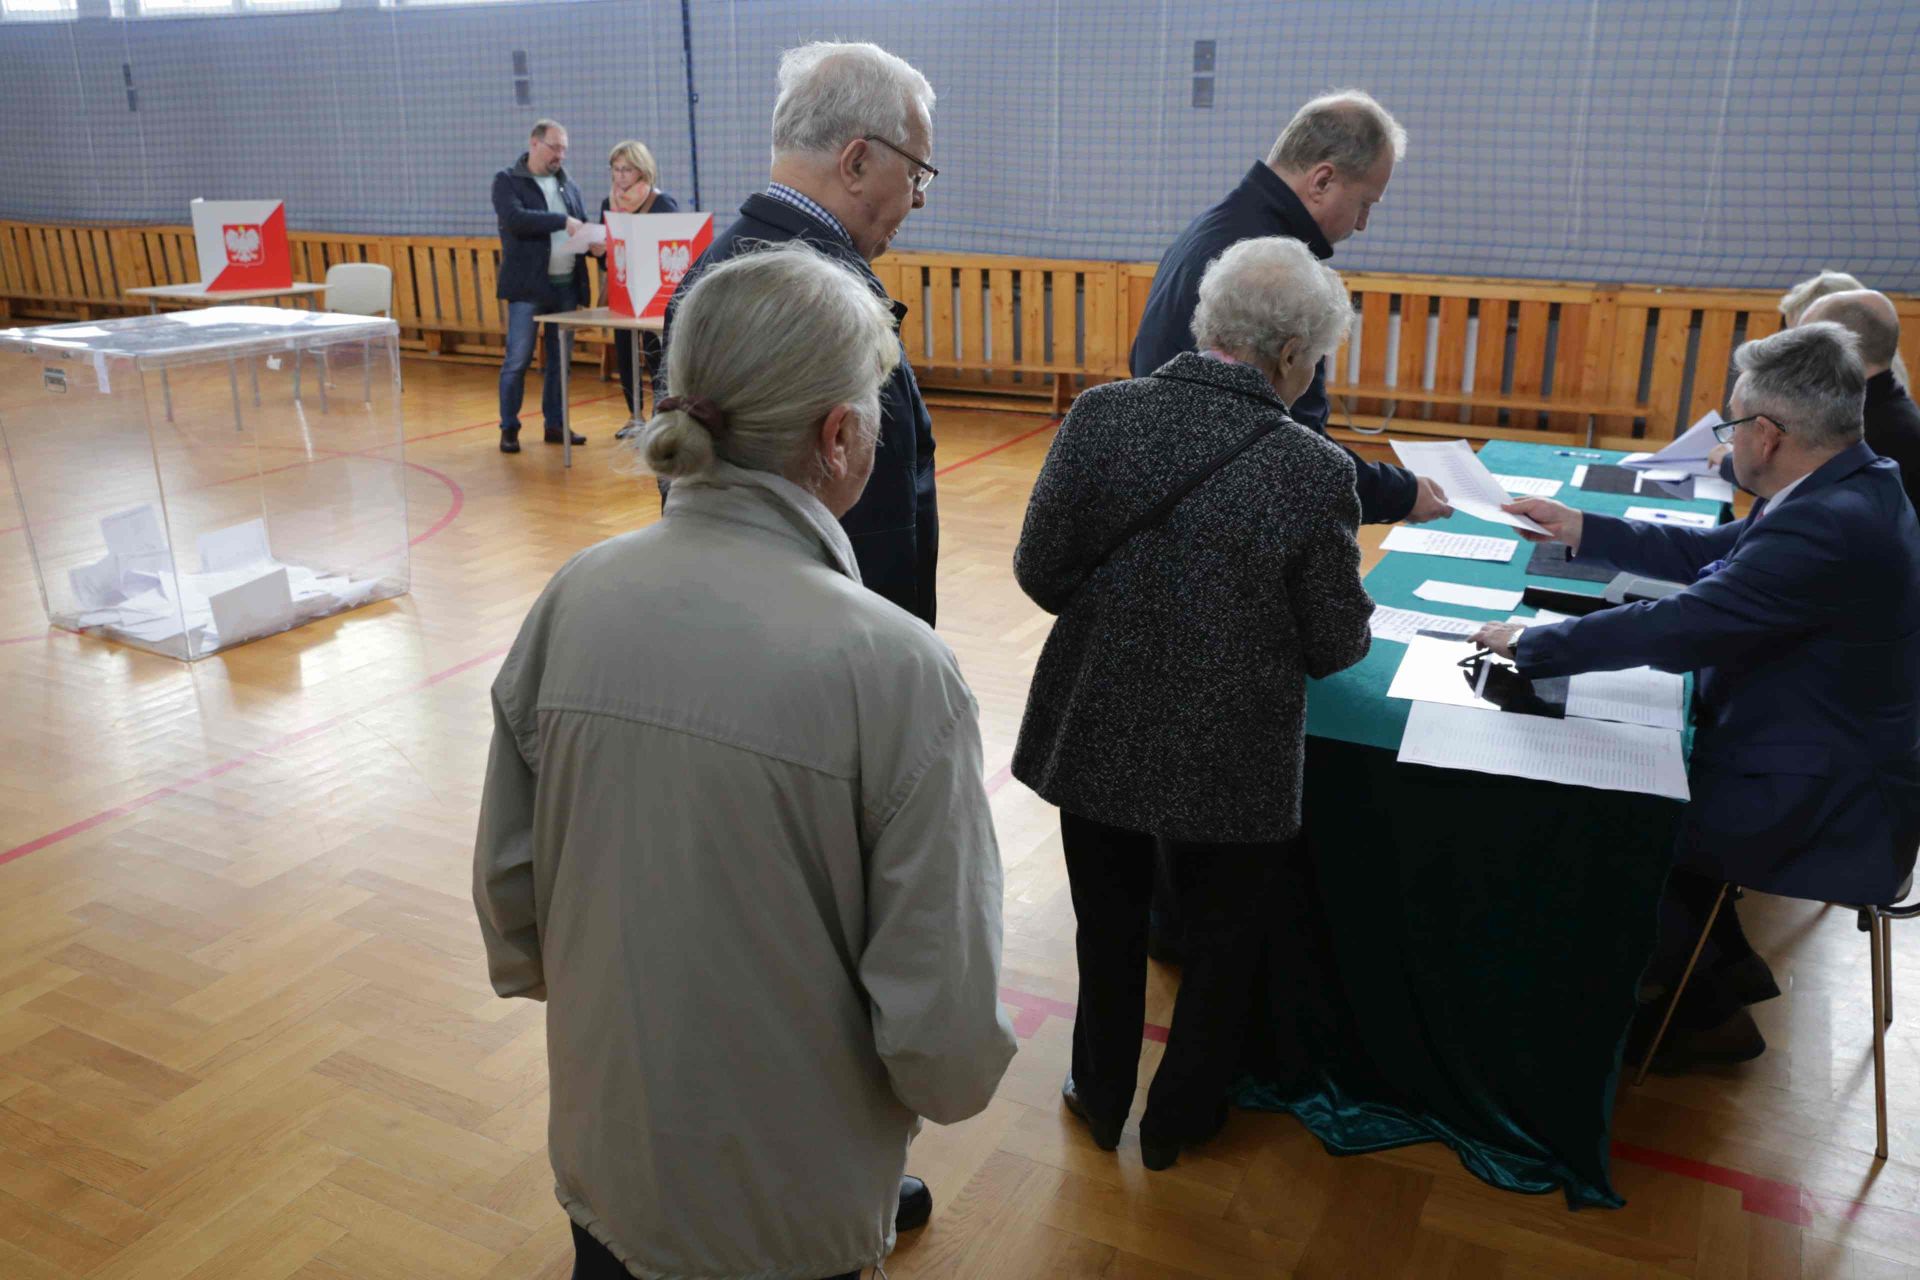 Na Zamysłowie do godziny 10 głosowało 65 osób. By wybory były tu prawomocne swoje głosy musi dzisiaj oddać 307 mieszkańców dzielnicy. Zdj. Wacław Troszka